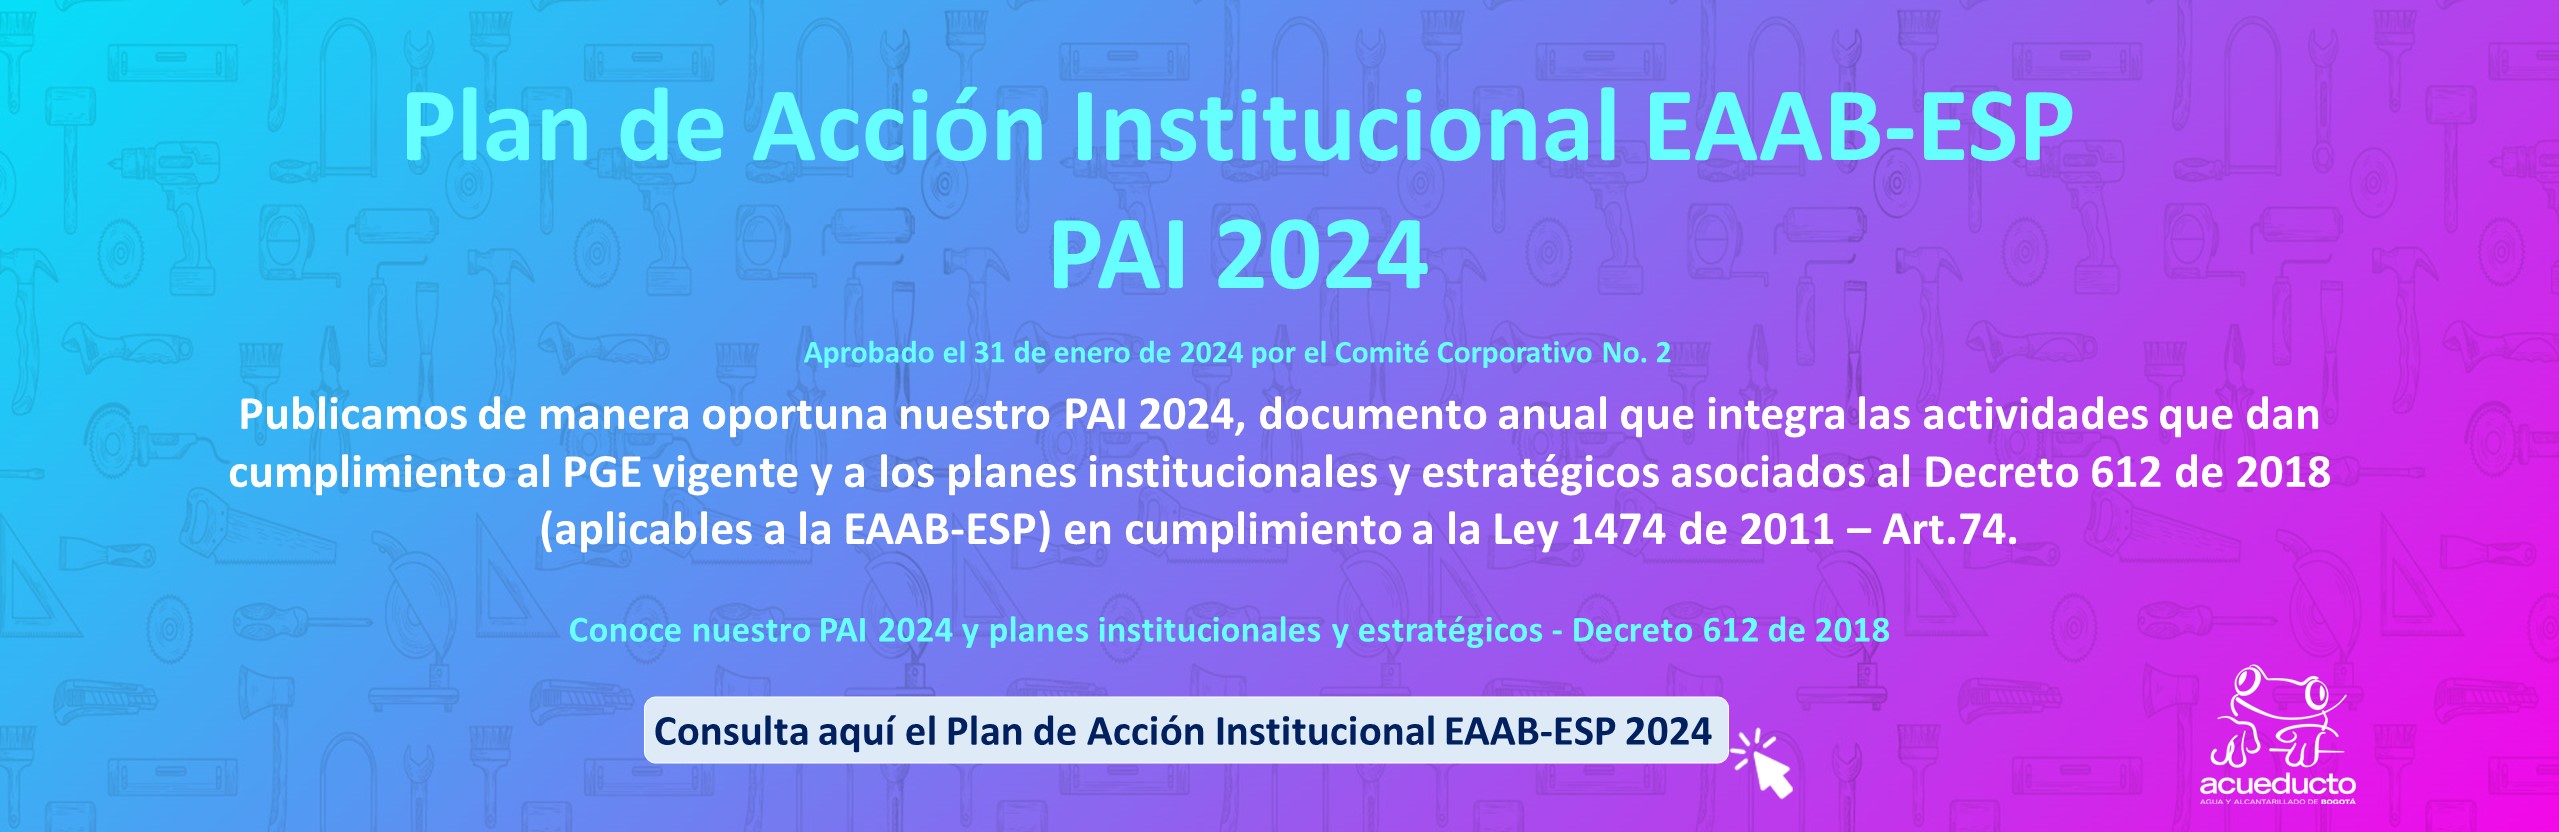 Plan de Acción Institucional EAAB -ESP PAI 2024